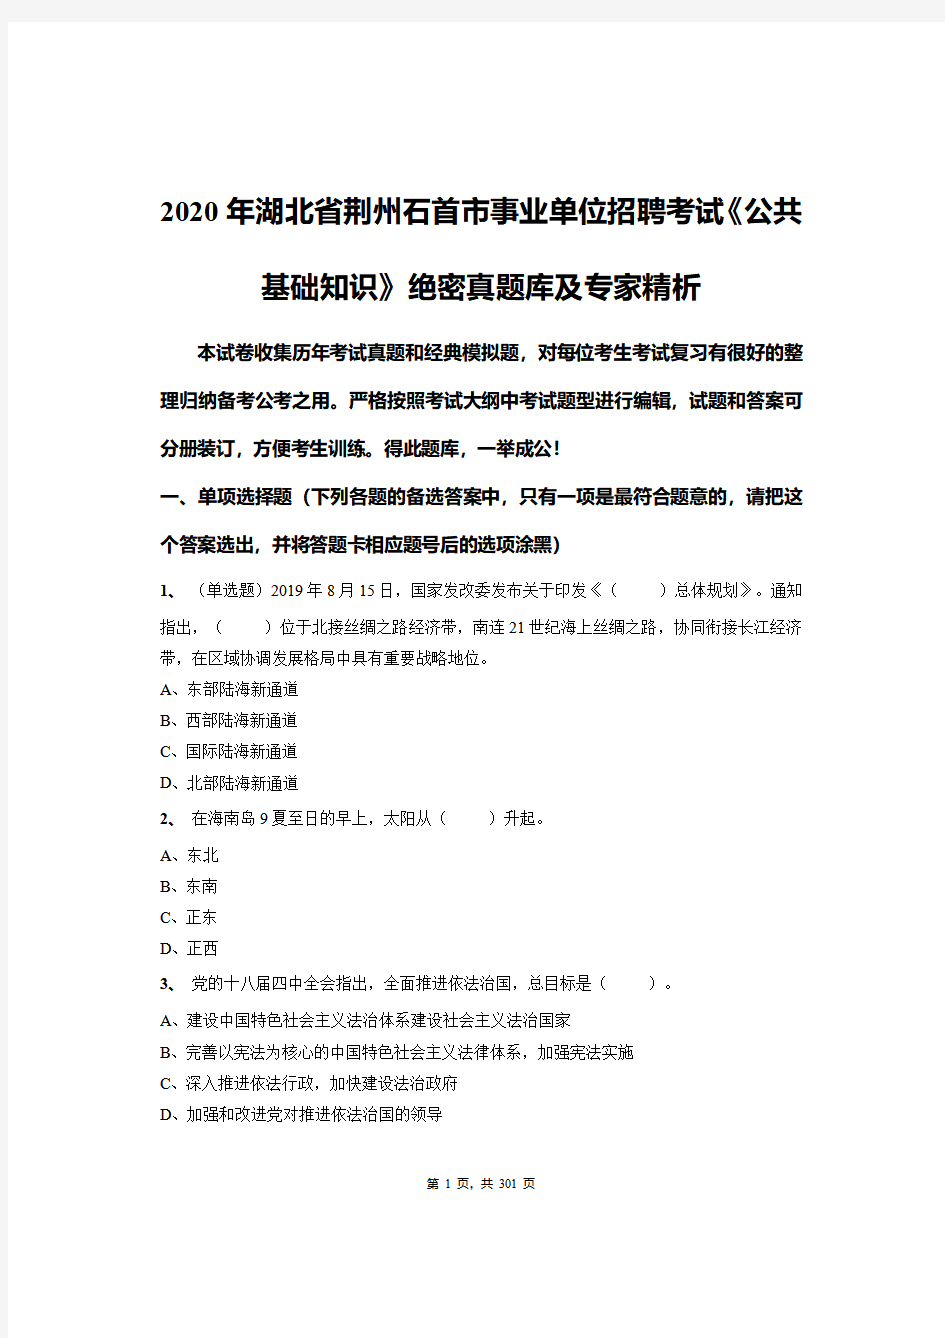 2020年湖北省荆州石首市事业单位招聘考试《公共基础知识》绝密真题库及专家精析